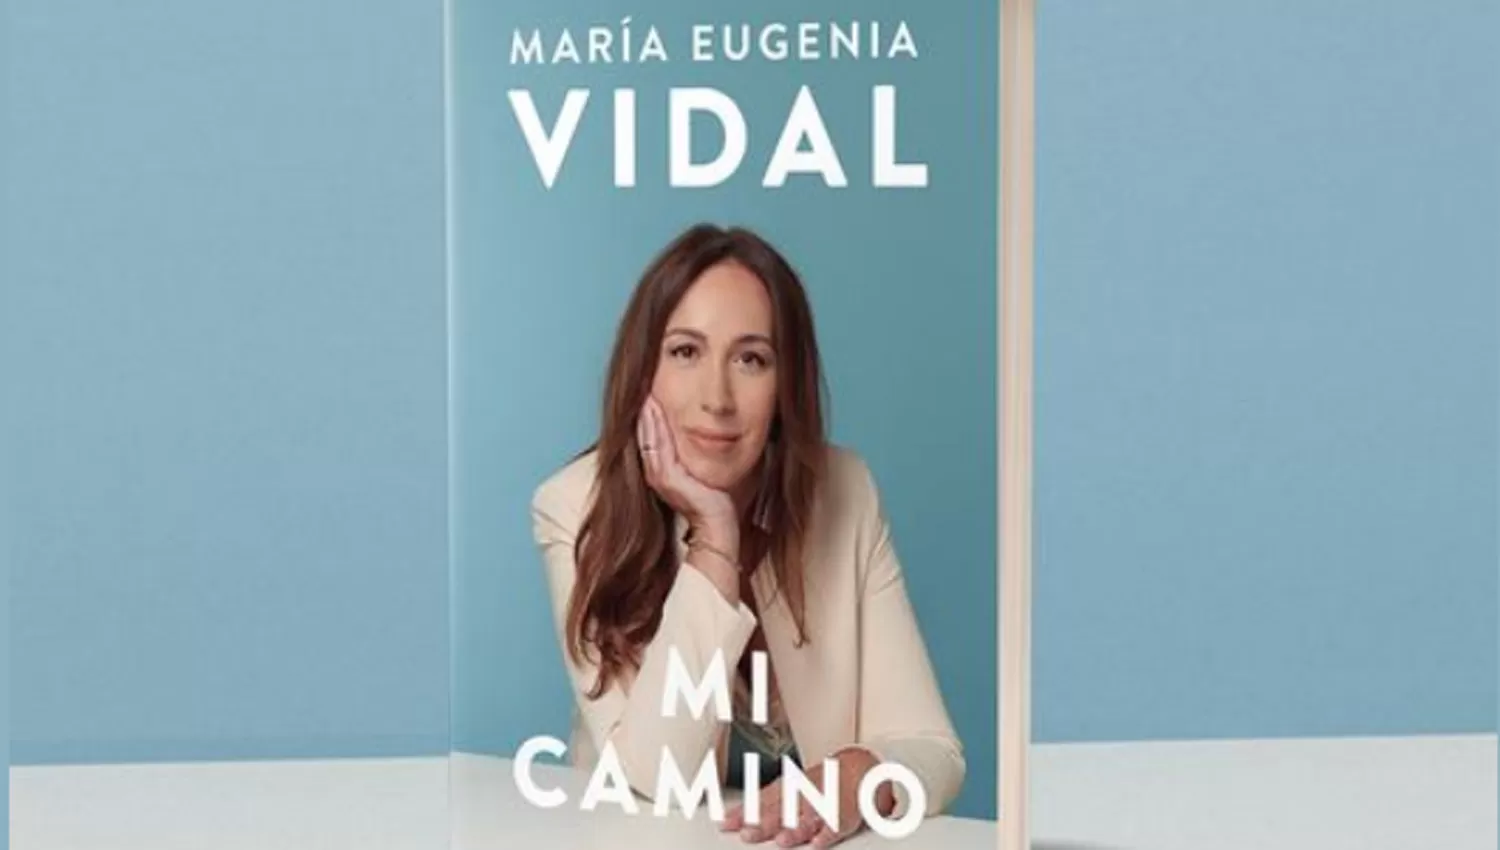 POR LA VUELTA. Mi Camino significará el regreso de Vidal a la vida política luego de terminar su mandato en Buenos Aires..